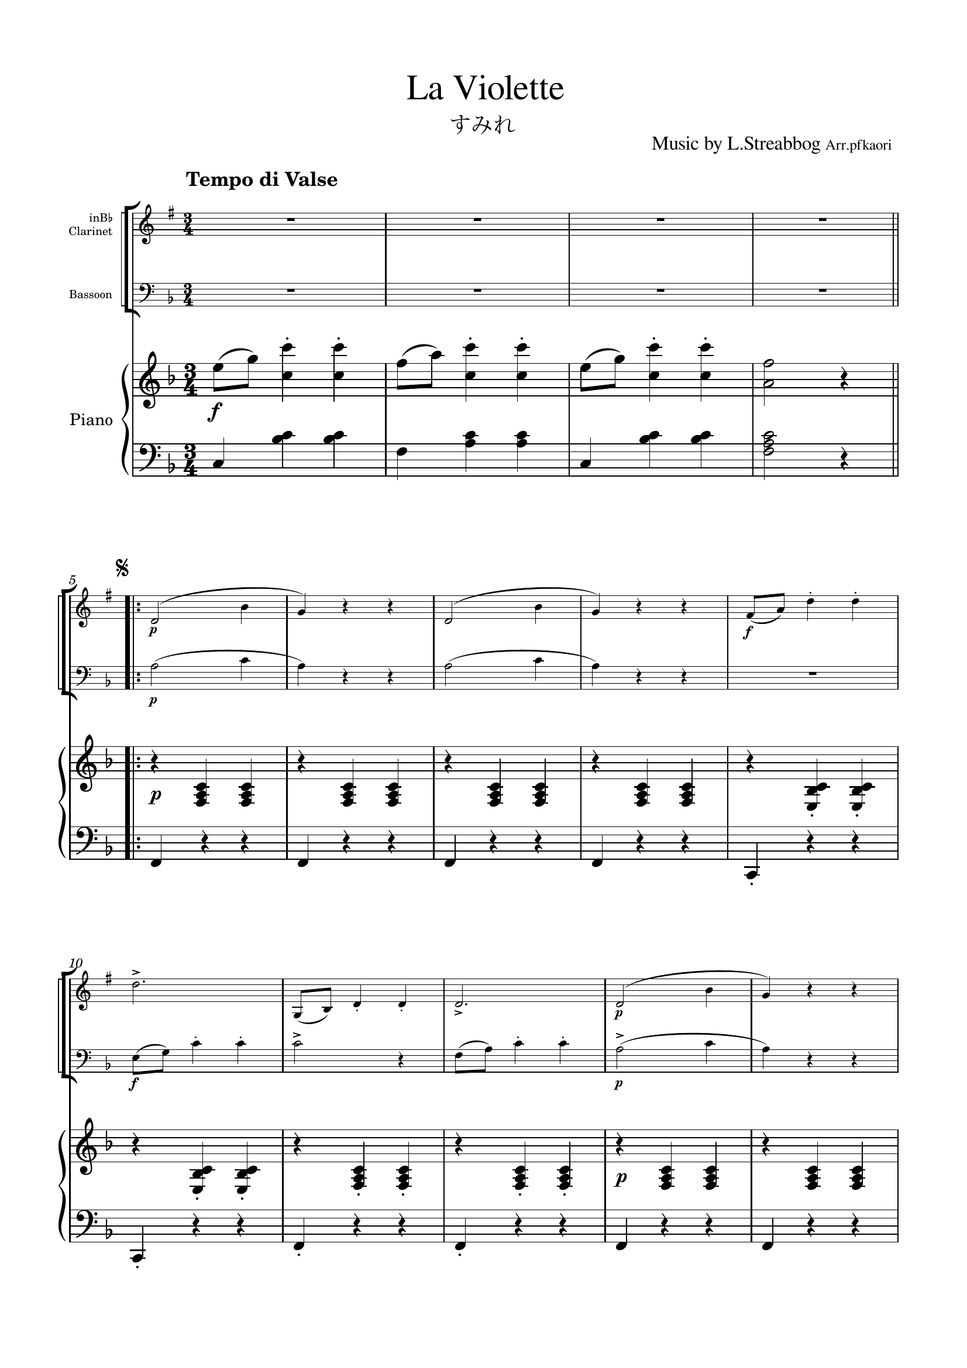 Strea bogg - La Violette (Piano trio / Clarinet & Bassoon) by pfkaori